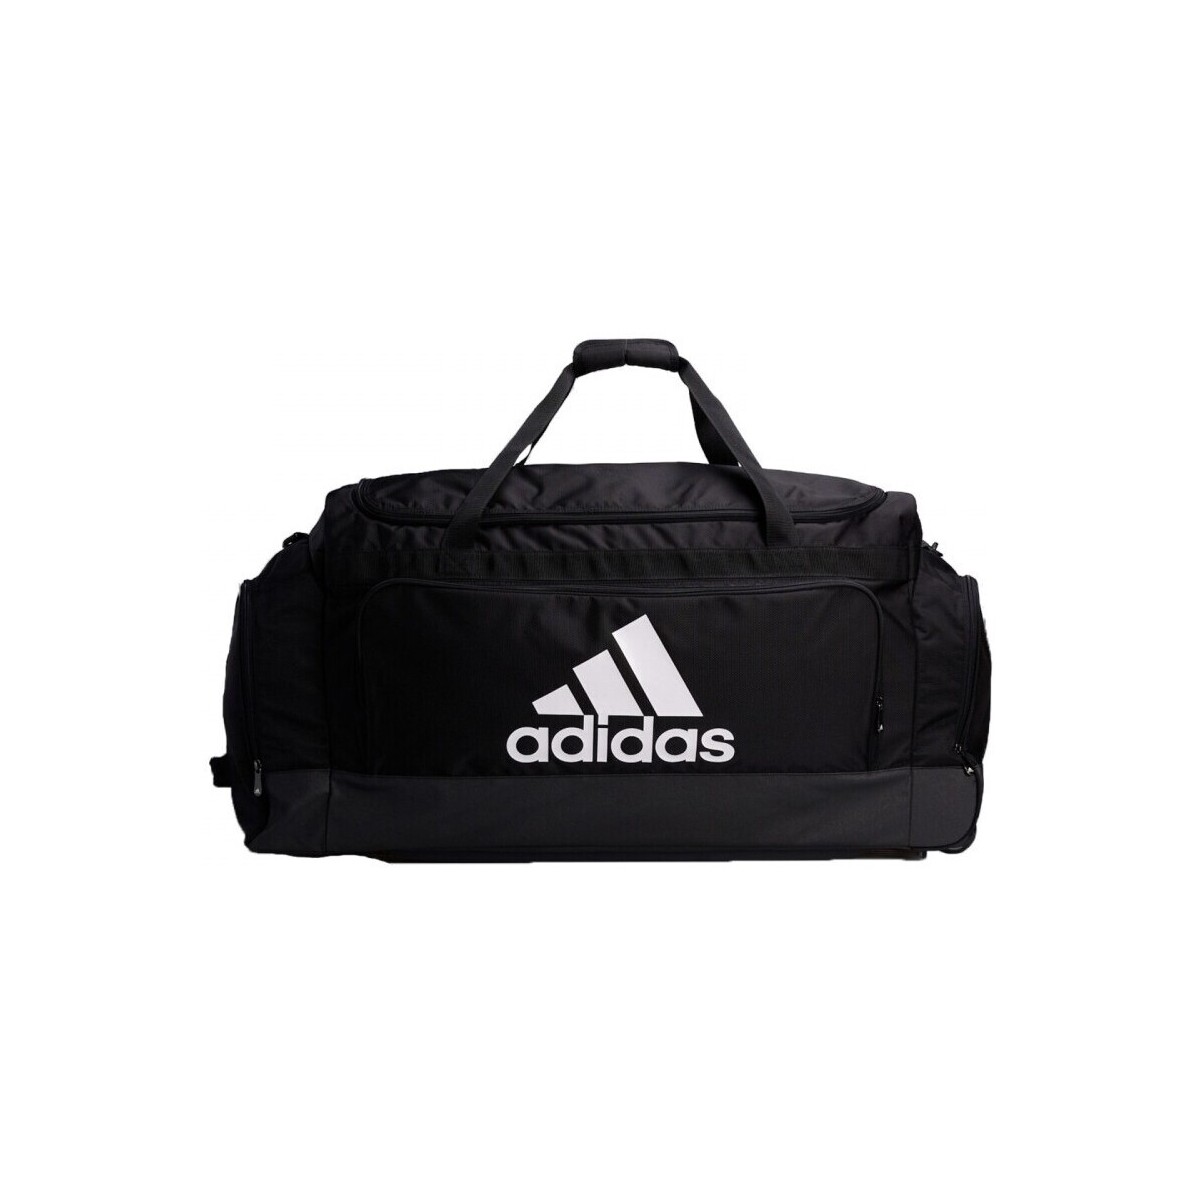 adidas Originals Team Bag Xxlw 25709175 1200 A